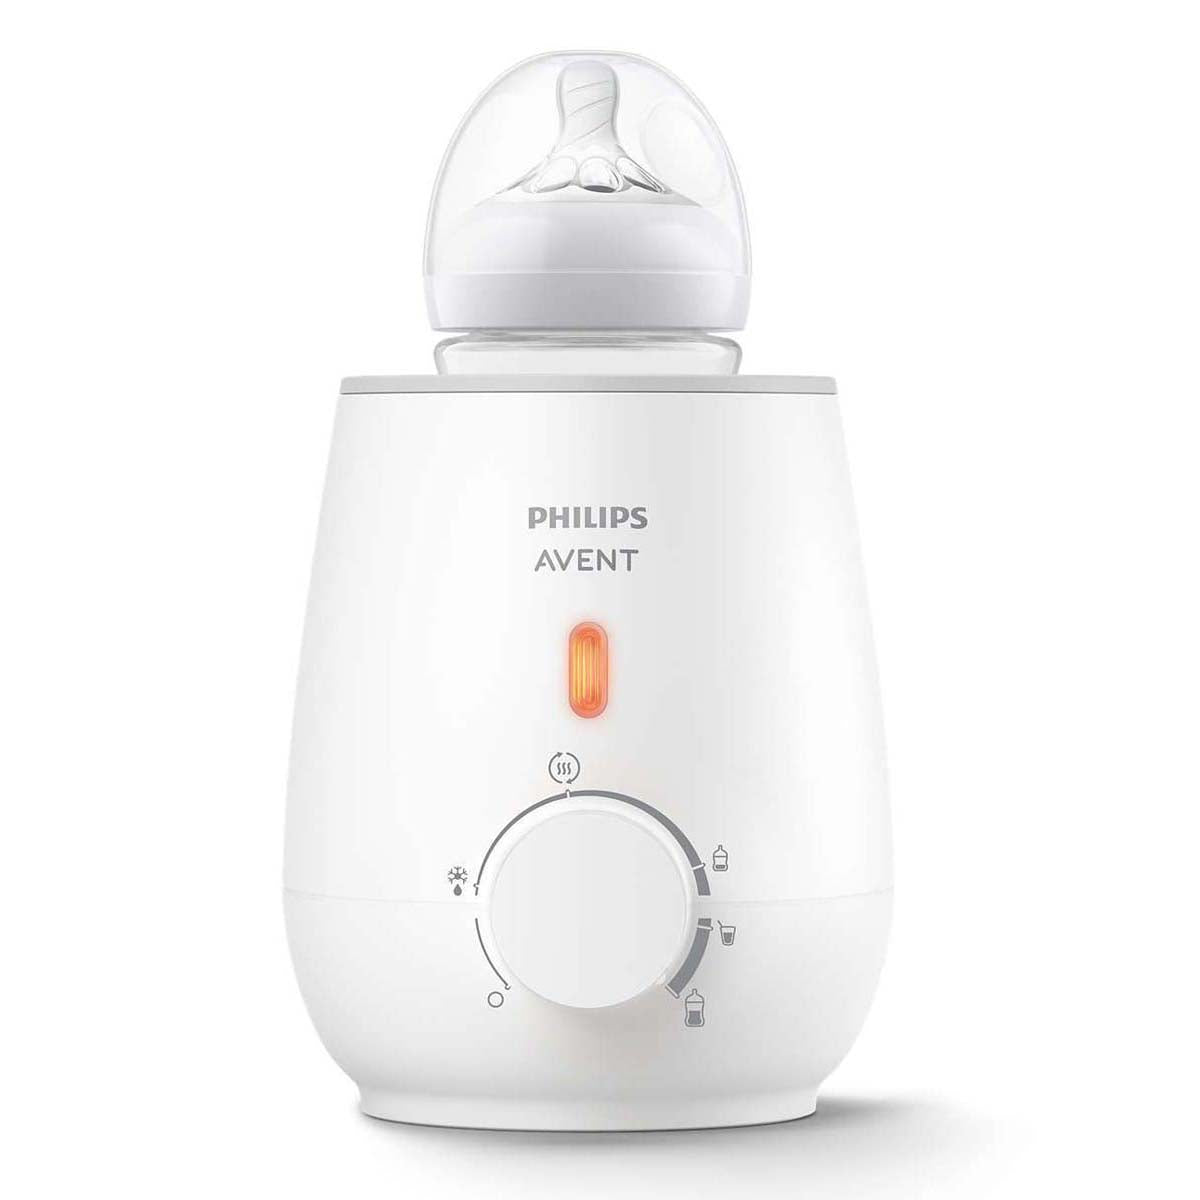 De de Philips Avent flesverwarmer is een flessenwarmer, waarmee je snel een voeding voor jouw kleintje opwarmt. Binnen 3 minuten verwarmt deze flesverwarmer een flesje van 180 ml. Met warmhoudfunctie. VanZus